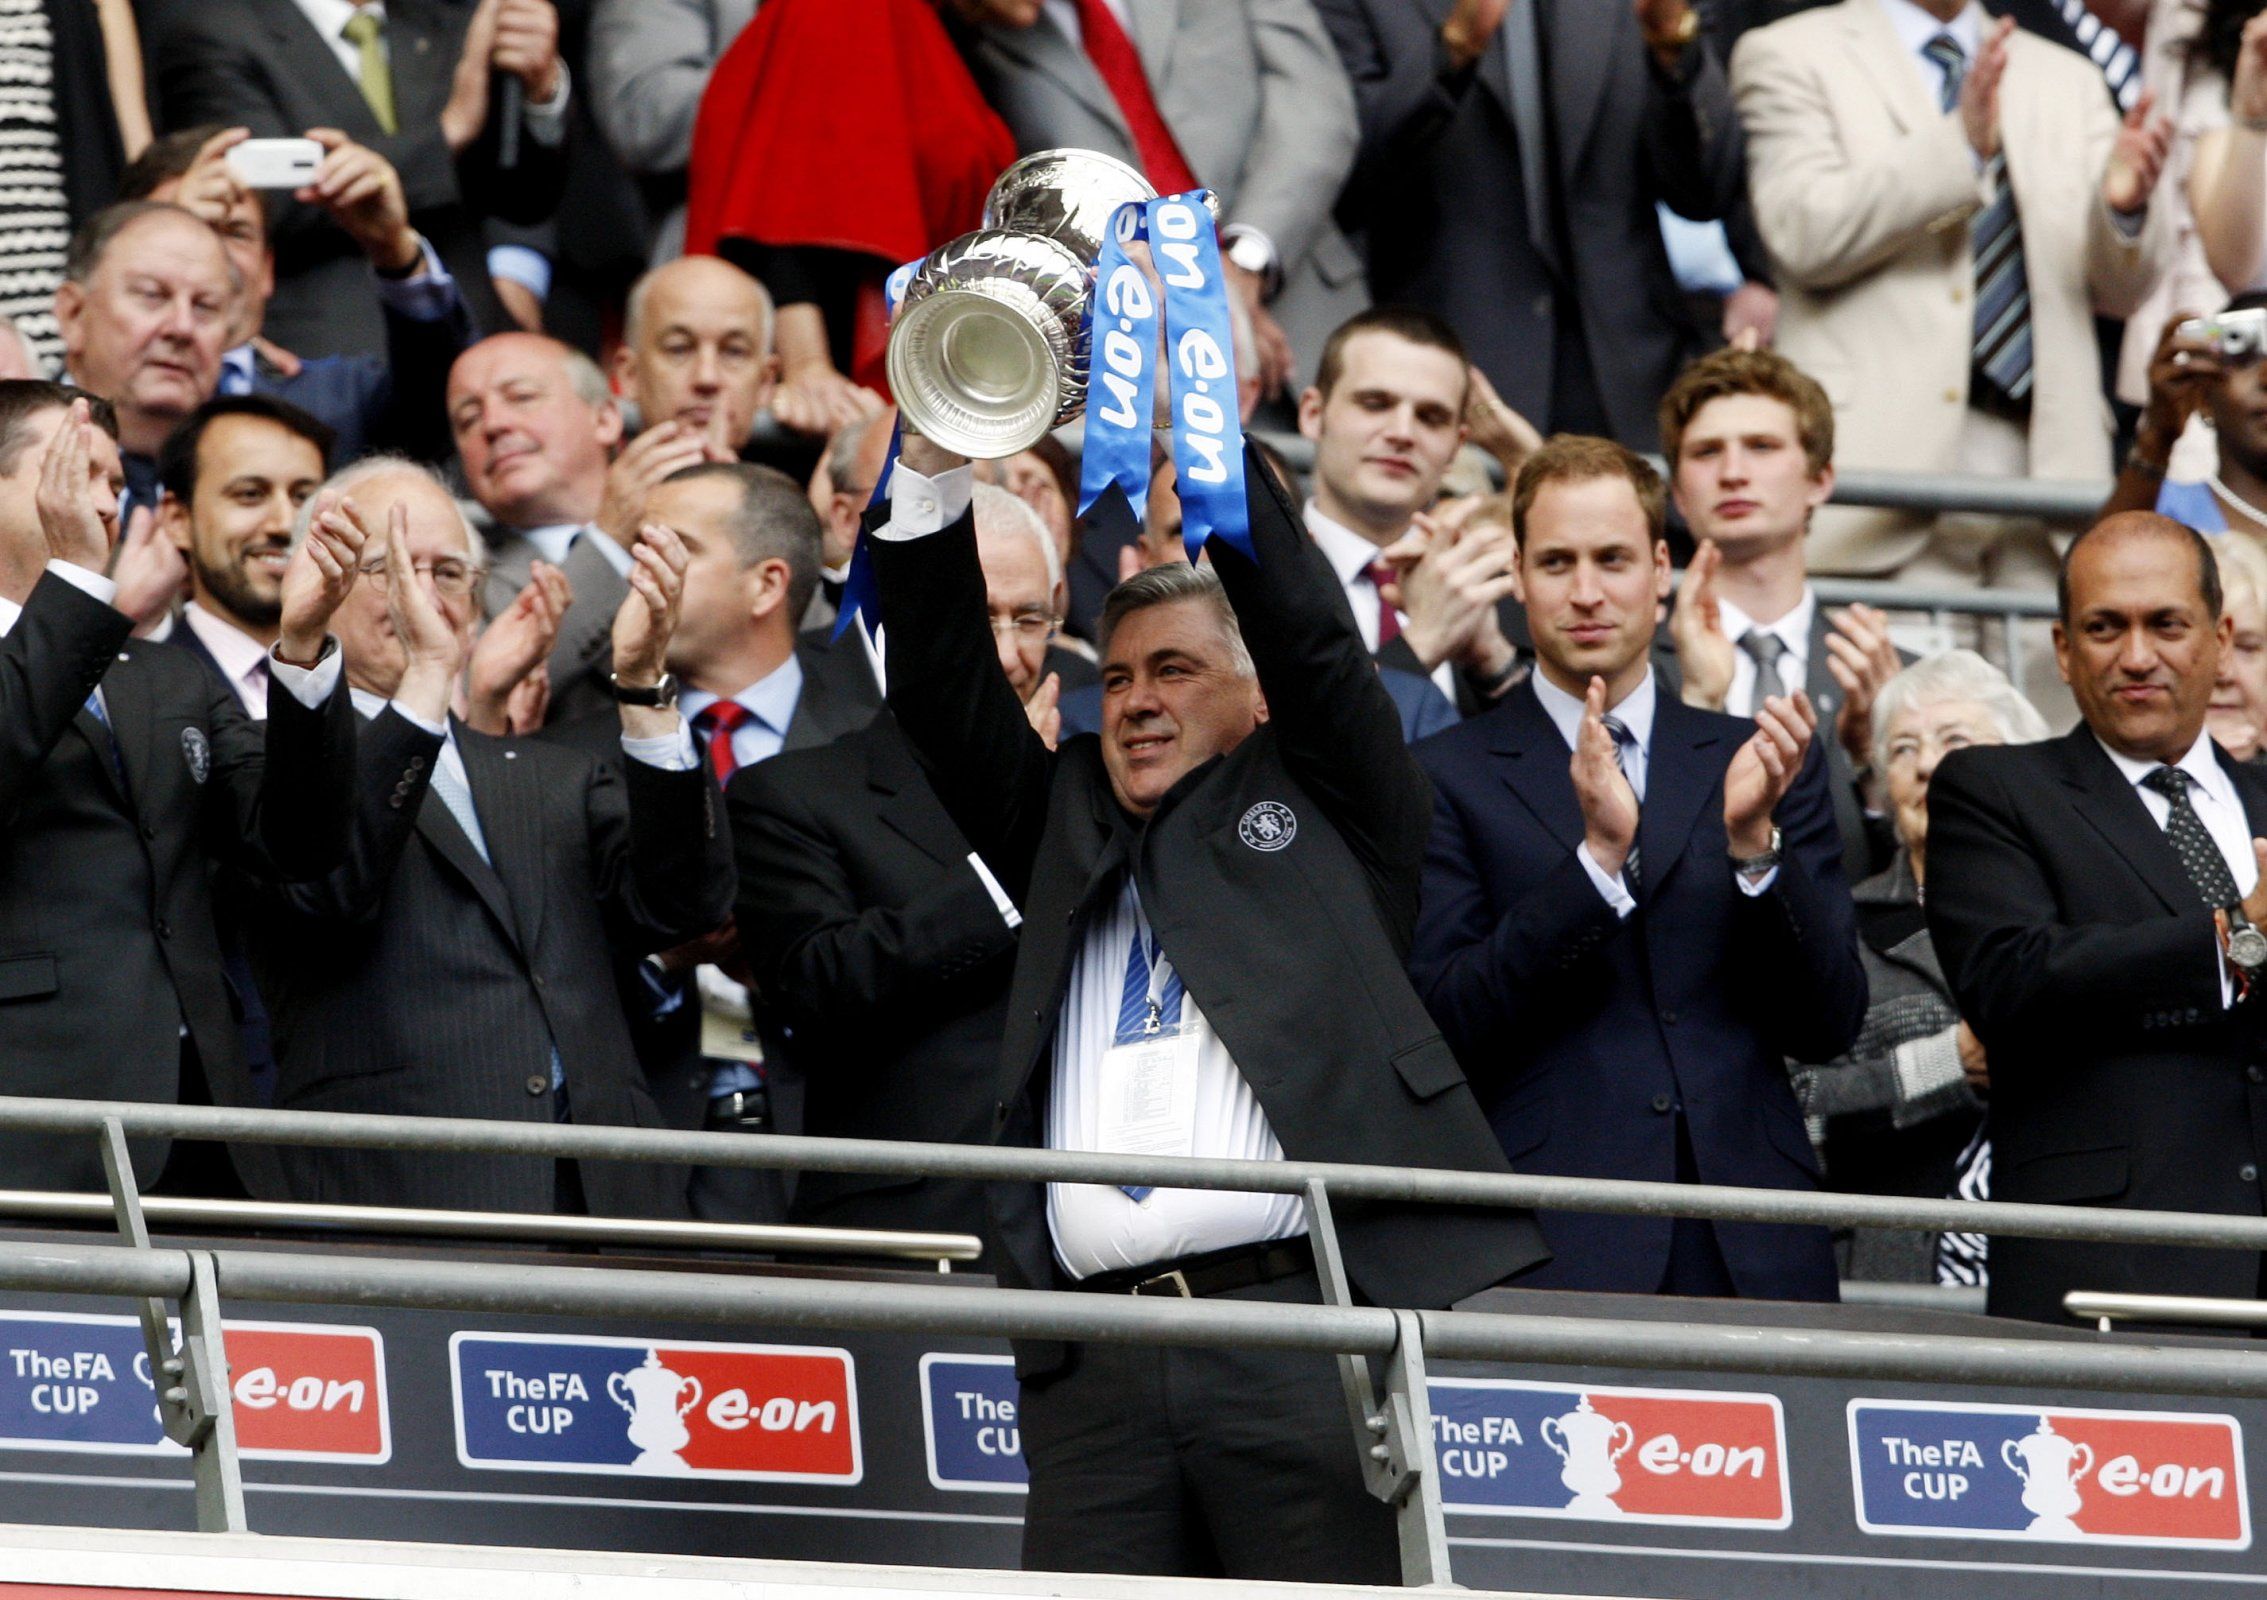 Carlo Ancelotti lifts the FA Cup